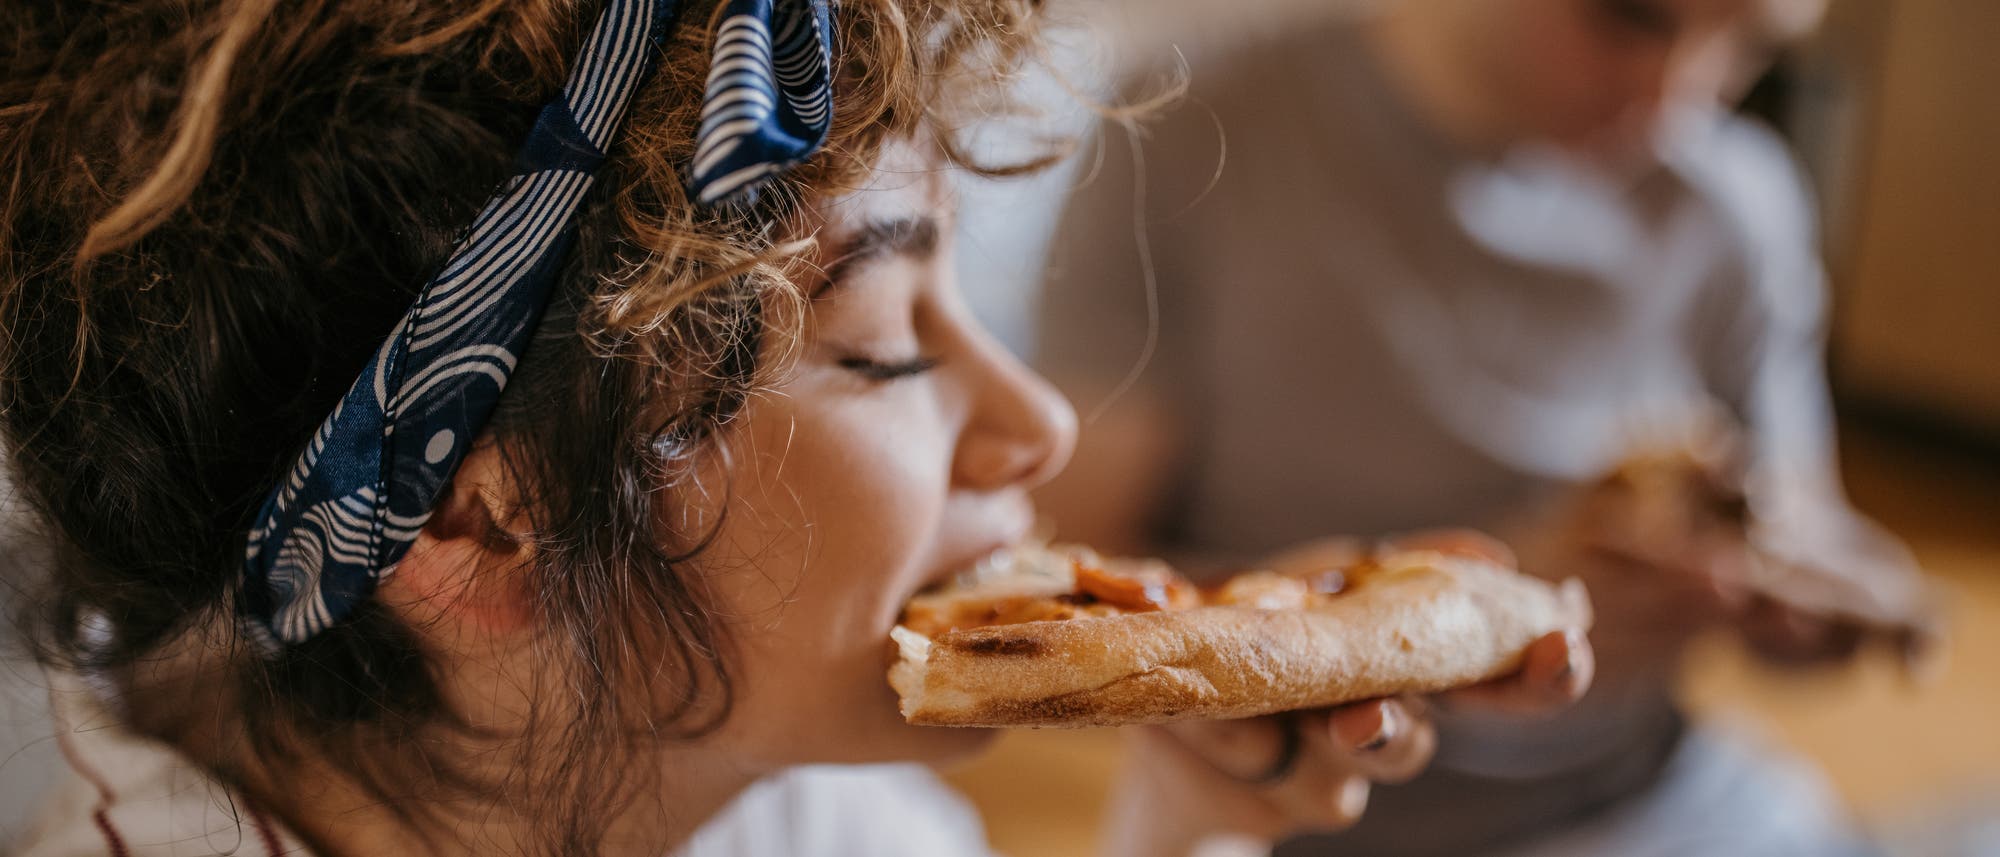 Fettig Essen wie Pizza sollen Menschen mit hohem Cholesterinspiegel meiden, heißt es.